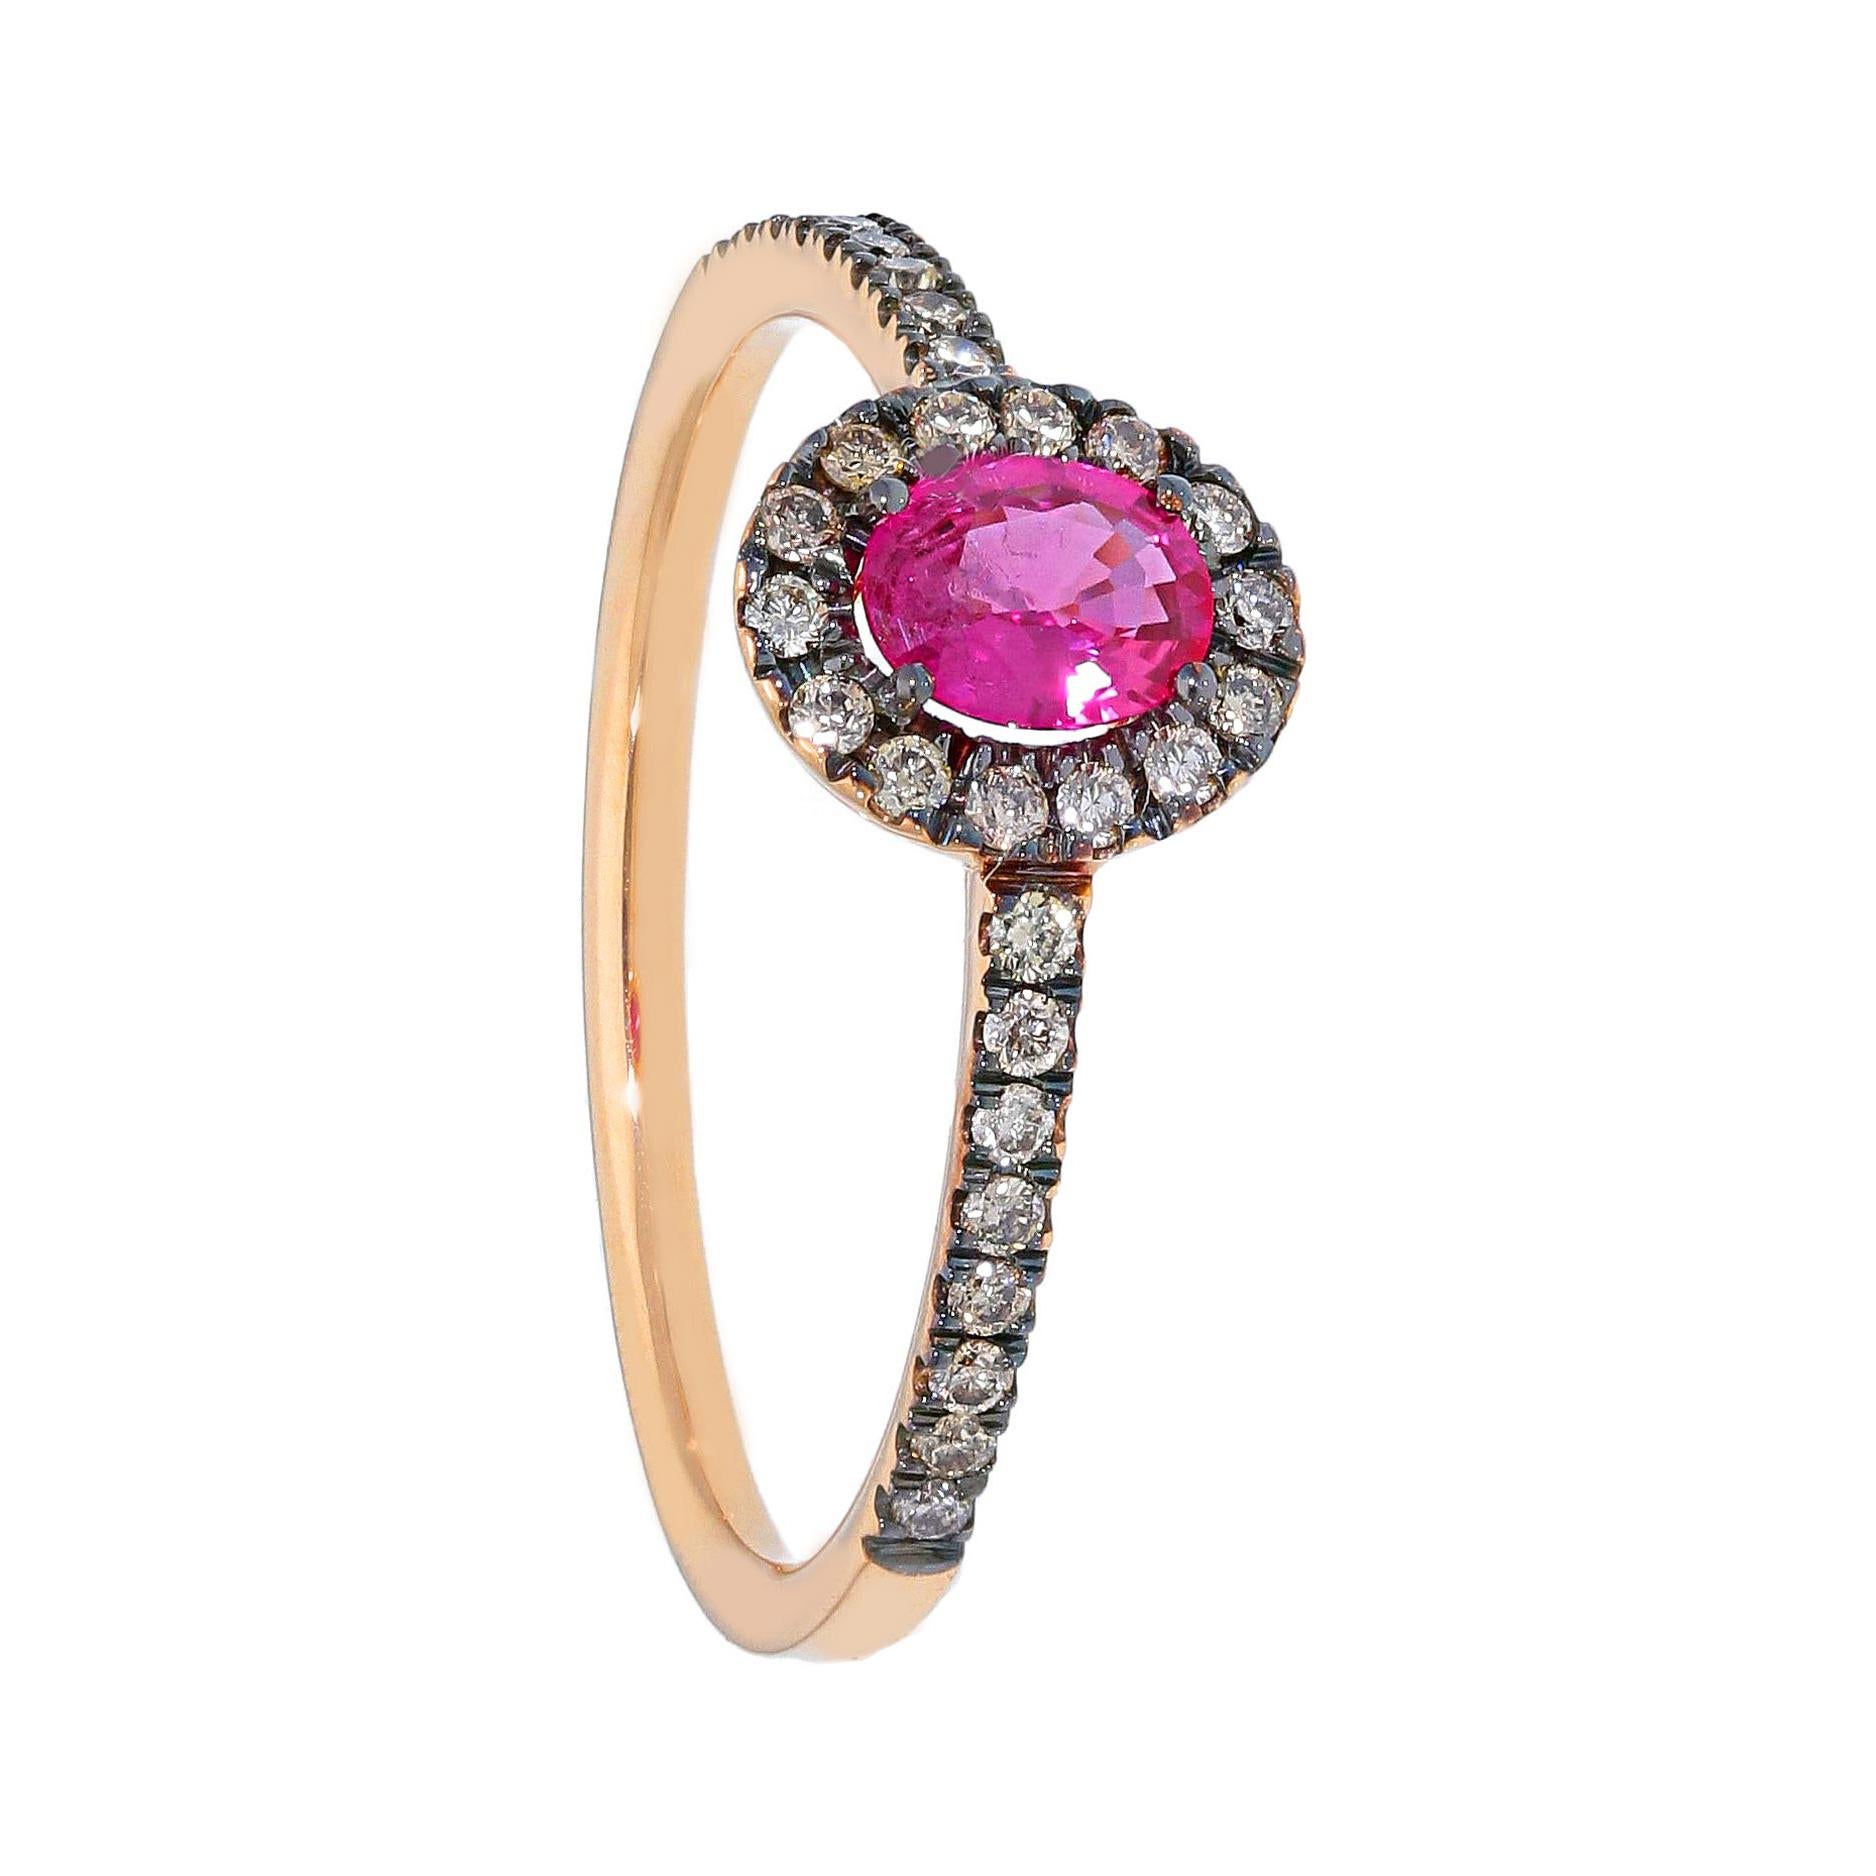 Bague de fiançailles Pradera colorée en or rose et noir 18 carats avec rubis et diamants bruns